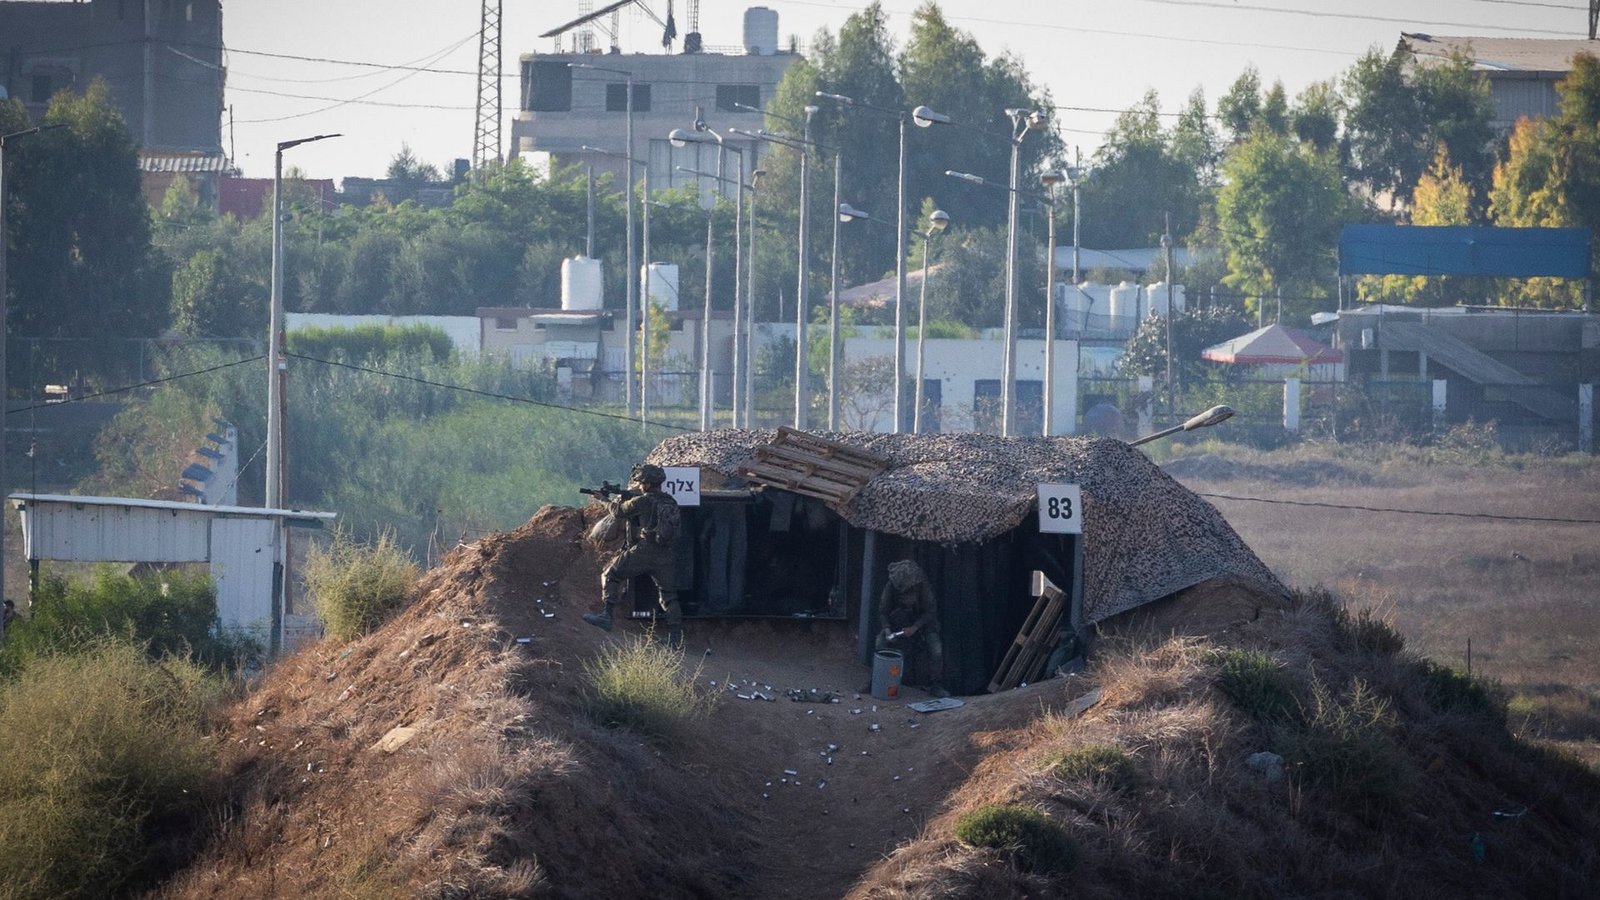 Israelische Soldaten sind während einer Demonstration an der Grenze zwischen Israel und Gaza im Einsatz.<span class='image-autor'>Foto: Ilia Yefimovich/dpa</span>